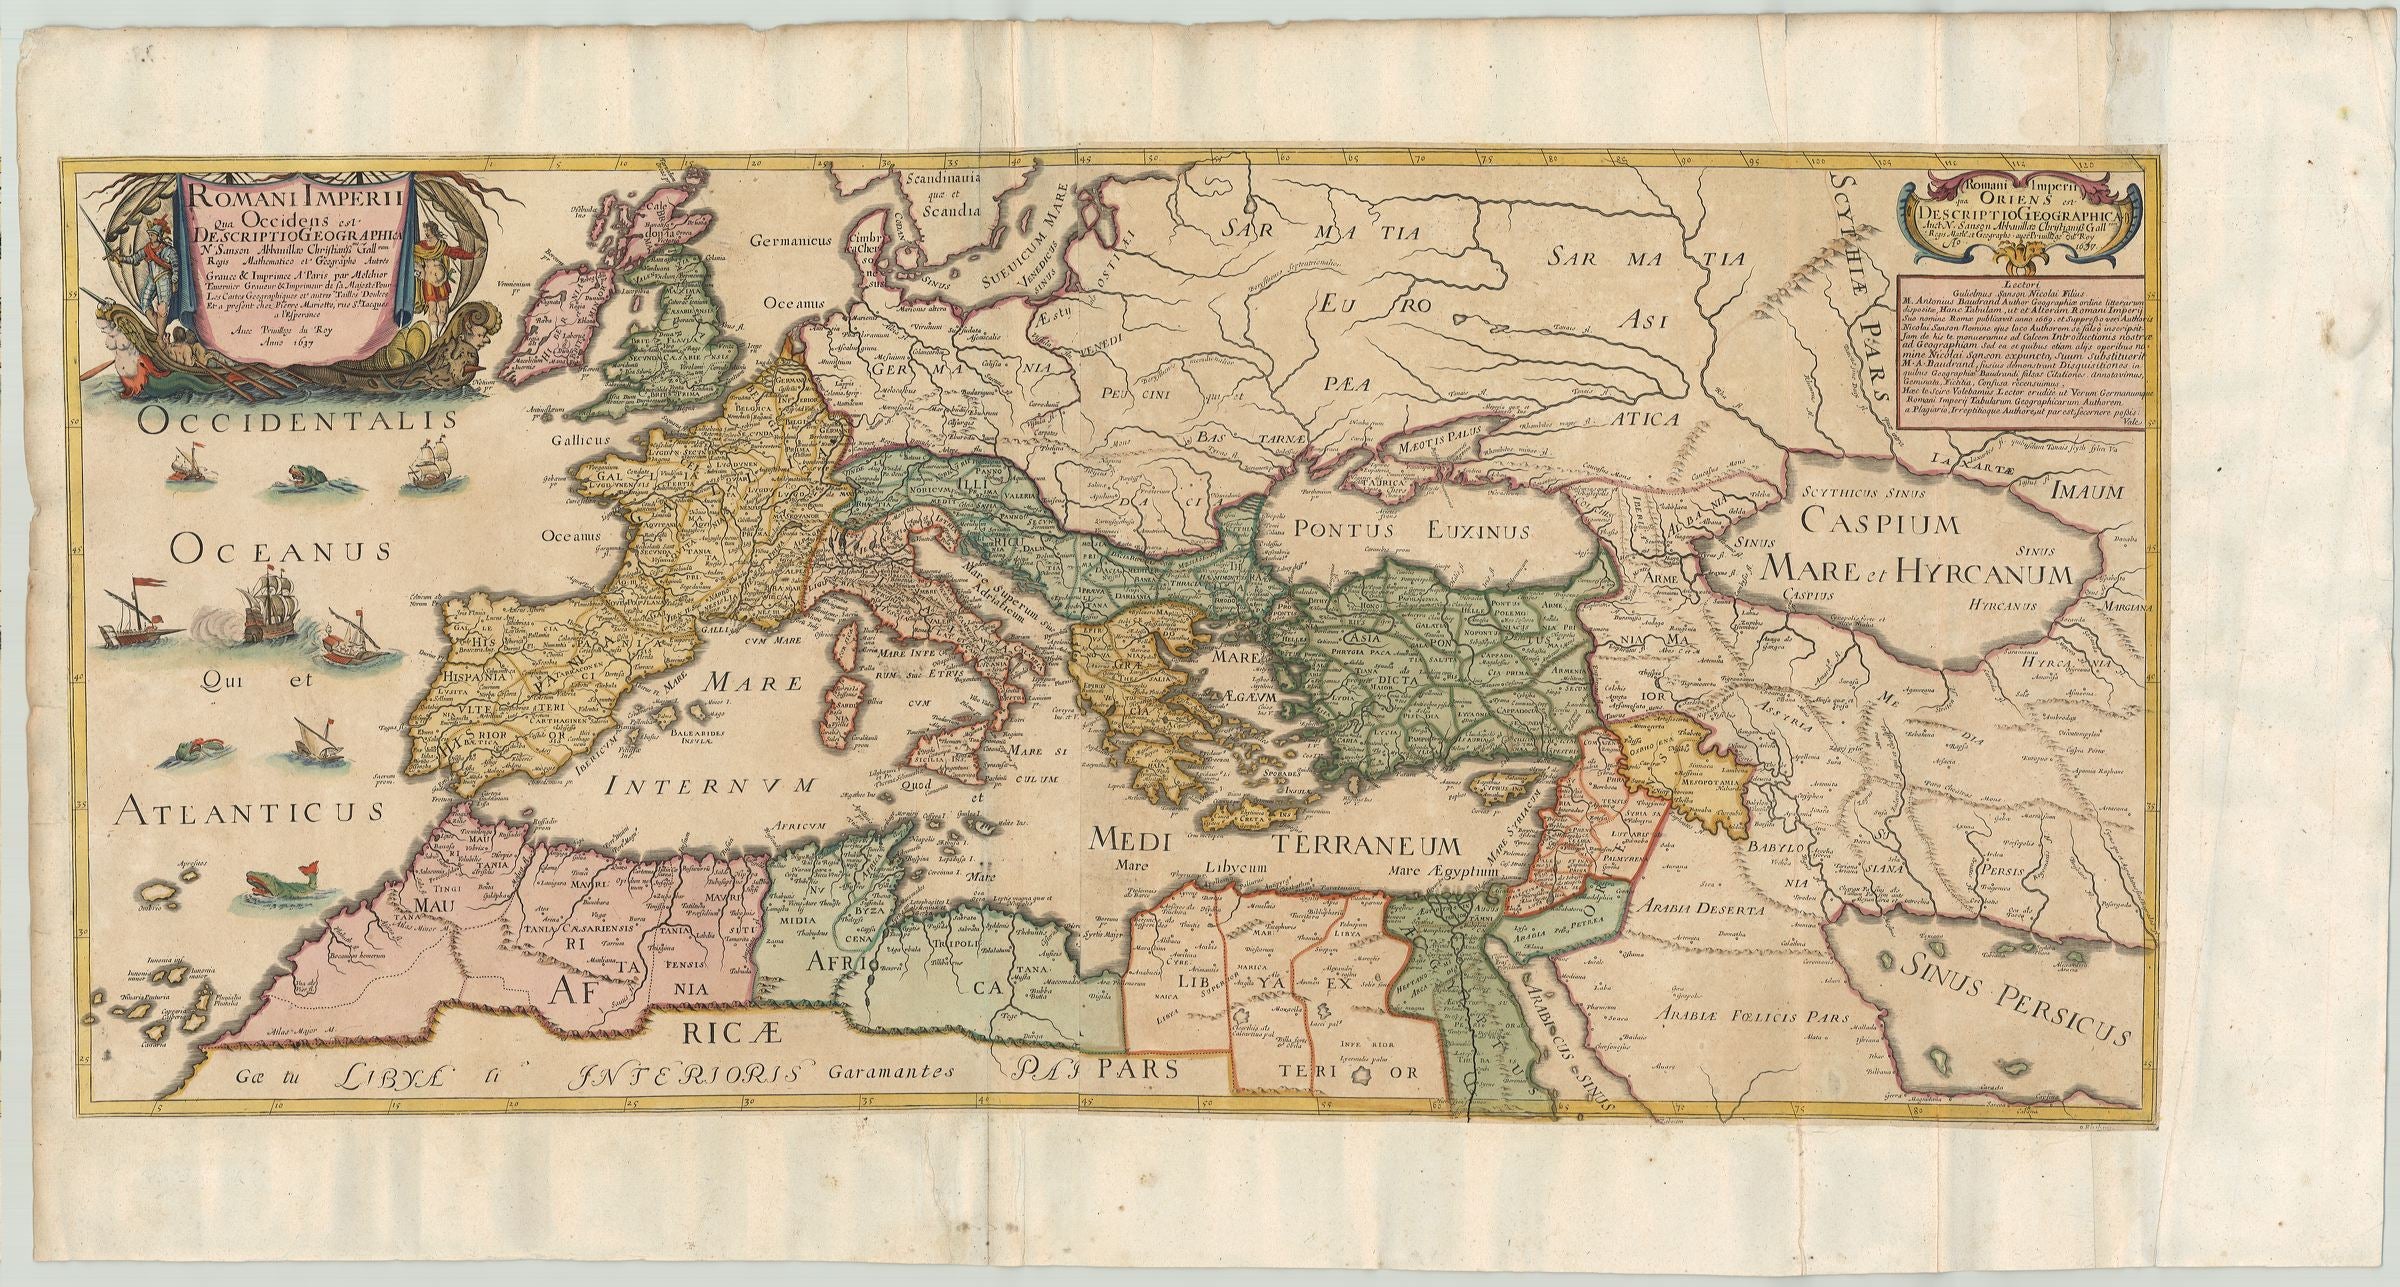 Römischer Reich im Jahr 1637 von Nicolas Sanson & Jean Pierre Mariette